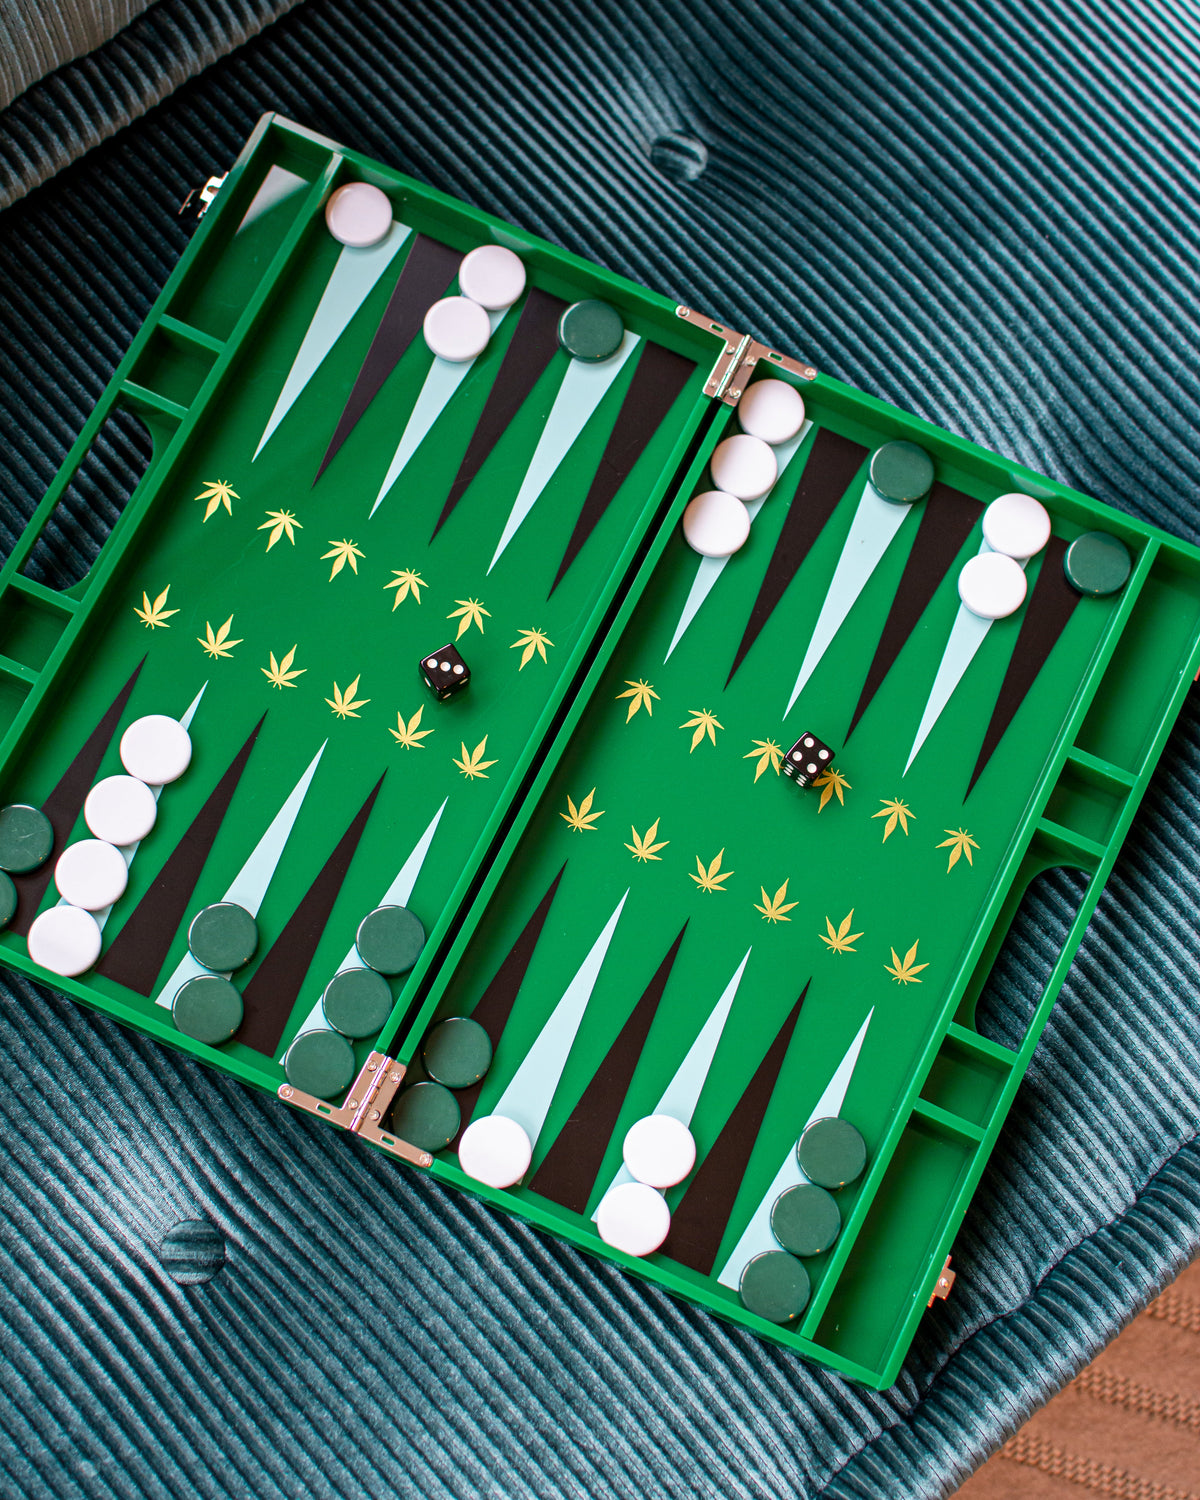 Leaf Backgammon Board